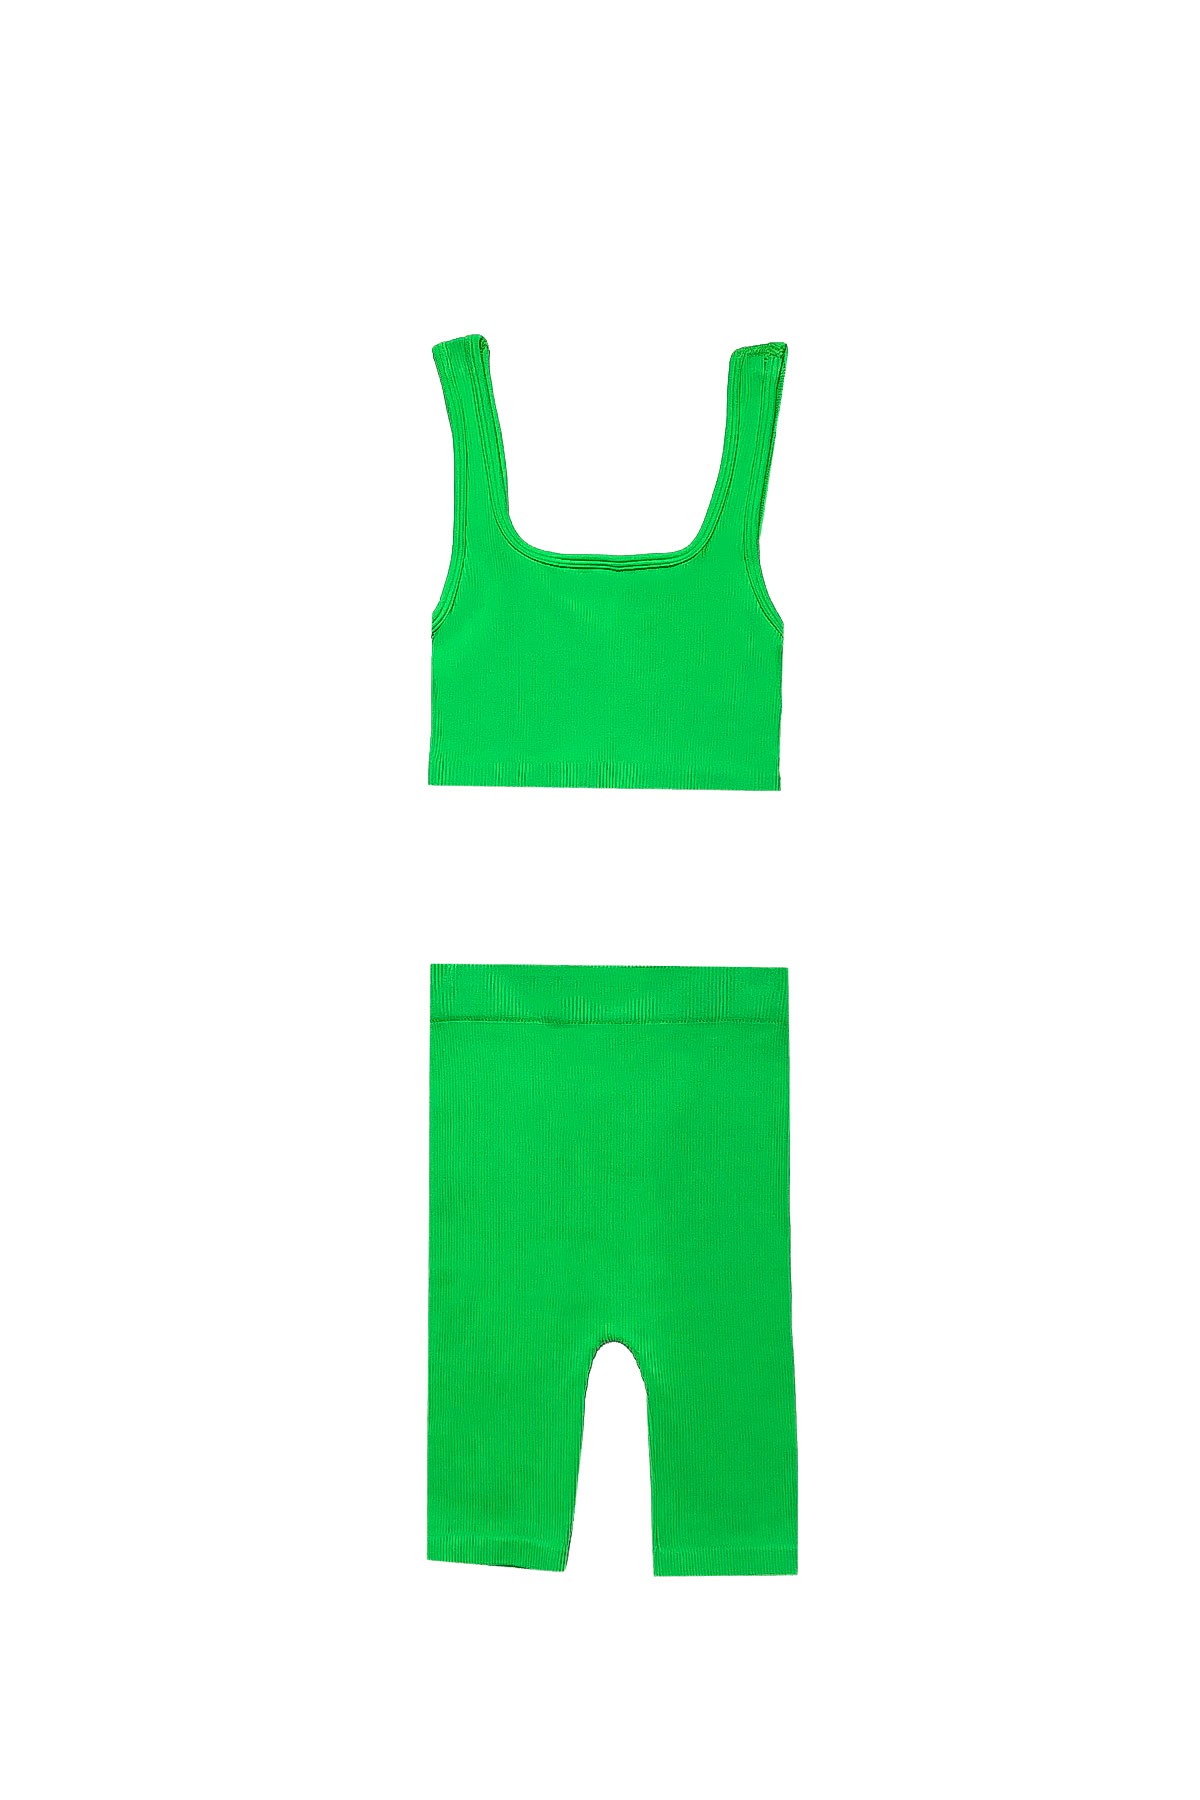 Geo - لباس بدون درزات للبضعة - أخضر نيون